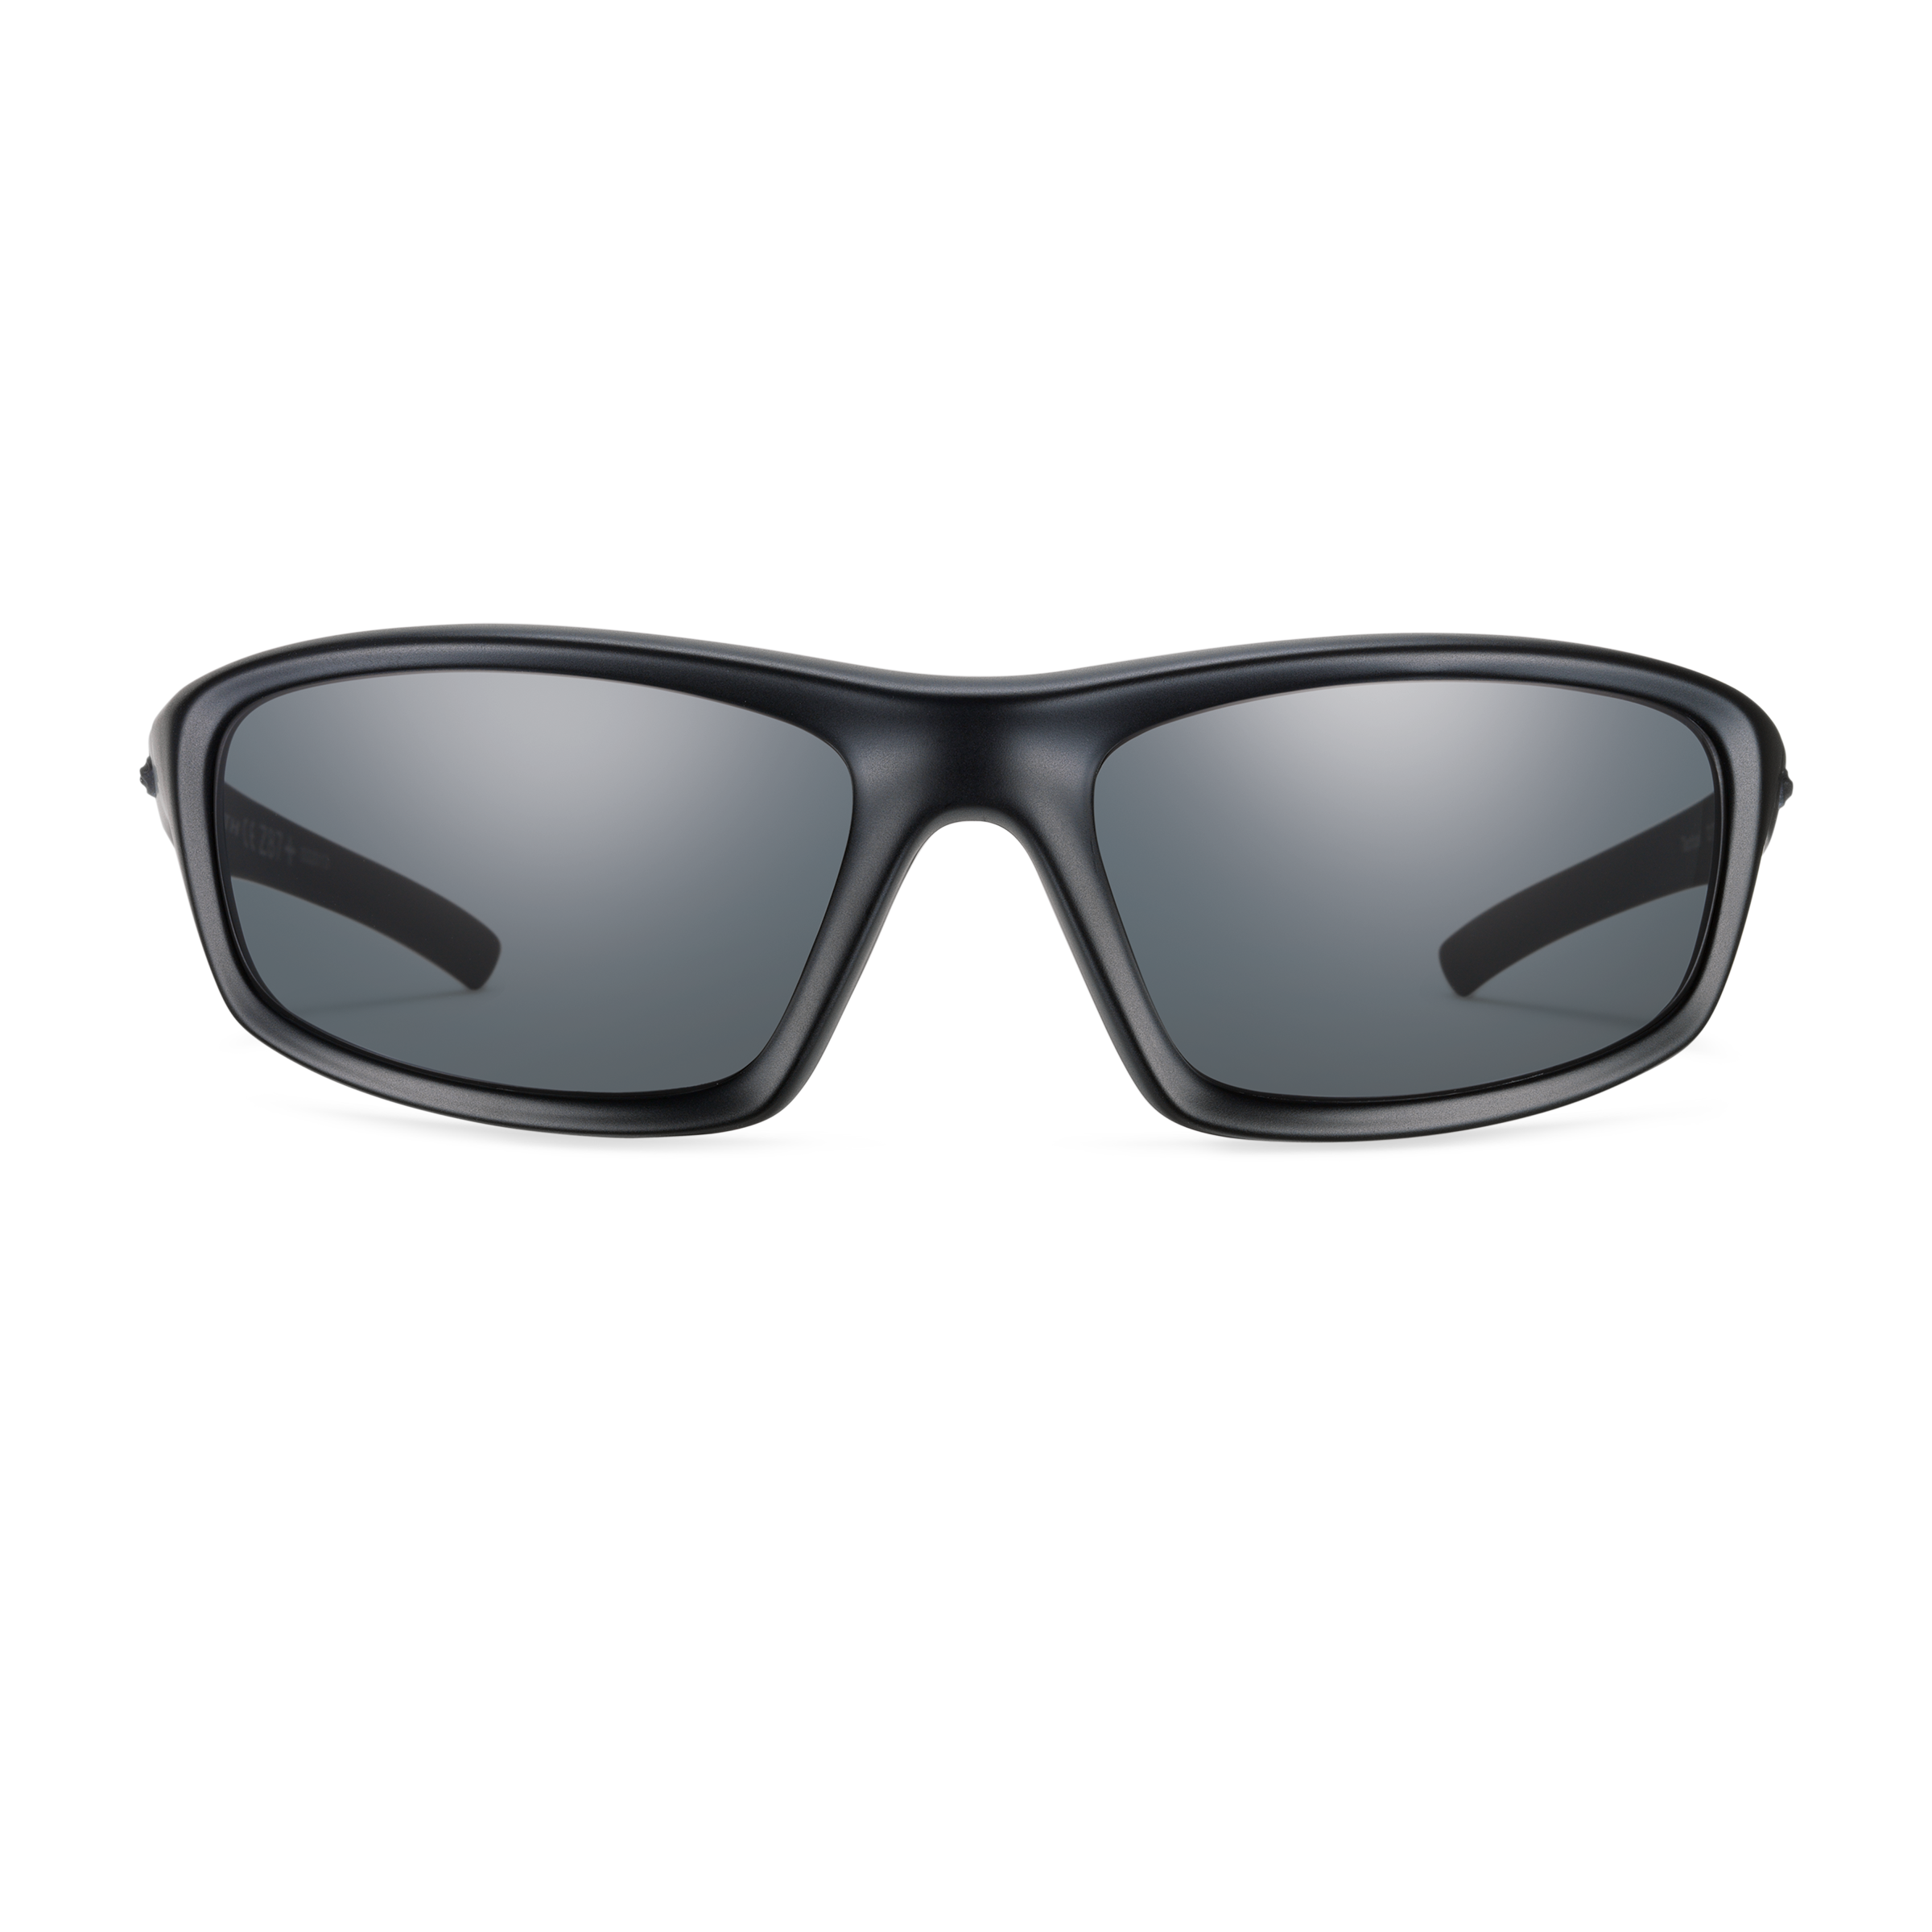 一部予約販売中】 取寄 スミス ディレクター エリート サングラス Smith Director Elite Sunglasses Black  Clear